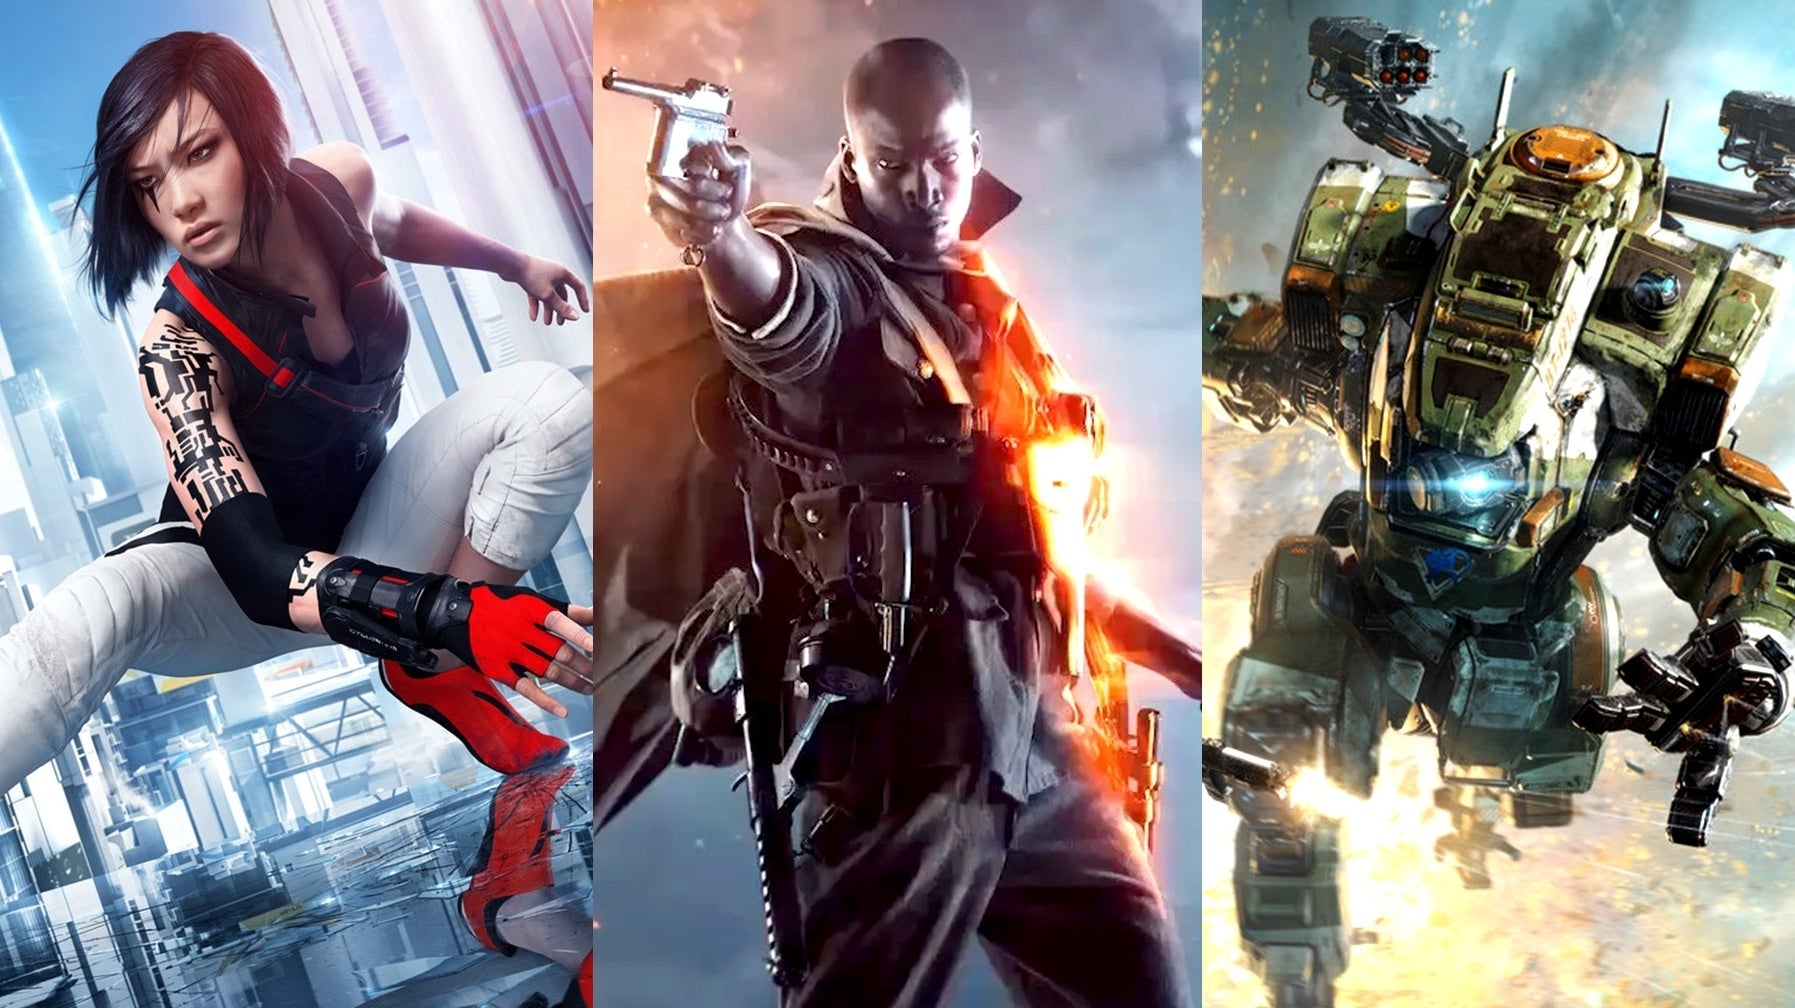 Bilder zu FPS Boost mit 120fps: Battlefield, Titanfall und Mirror's Edge Catalyst auf Xbox Series X/S getestet